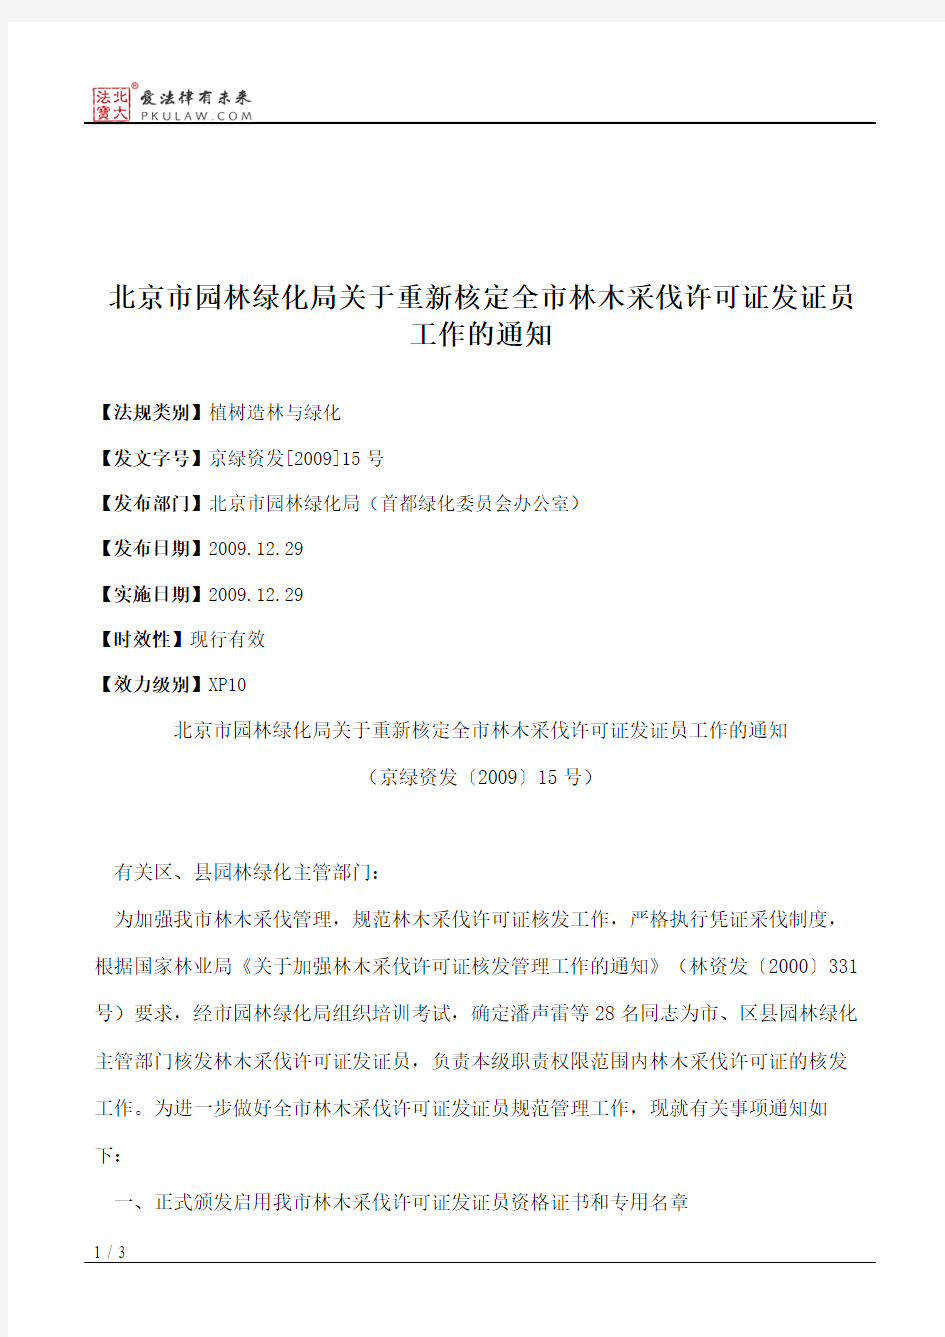 北京市园林绿化局关于重新核定全市林木采伐许可证发证员工作的通知